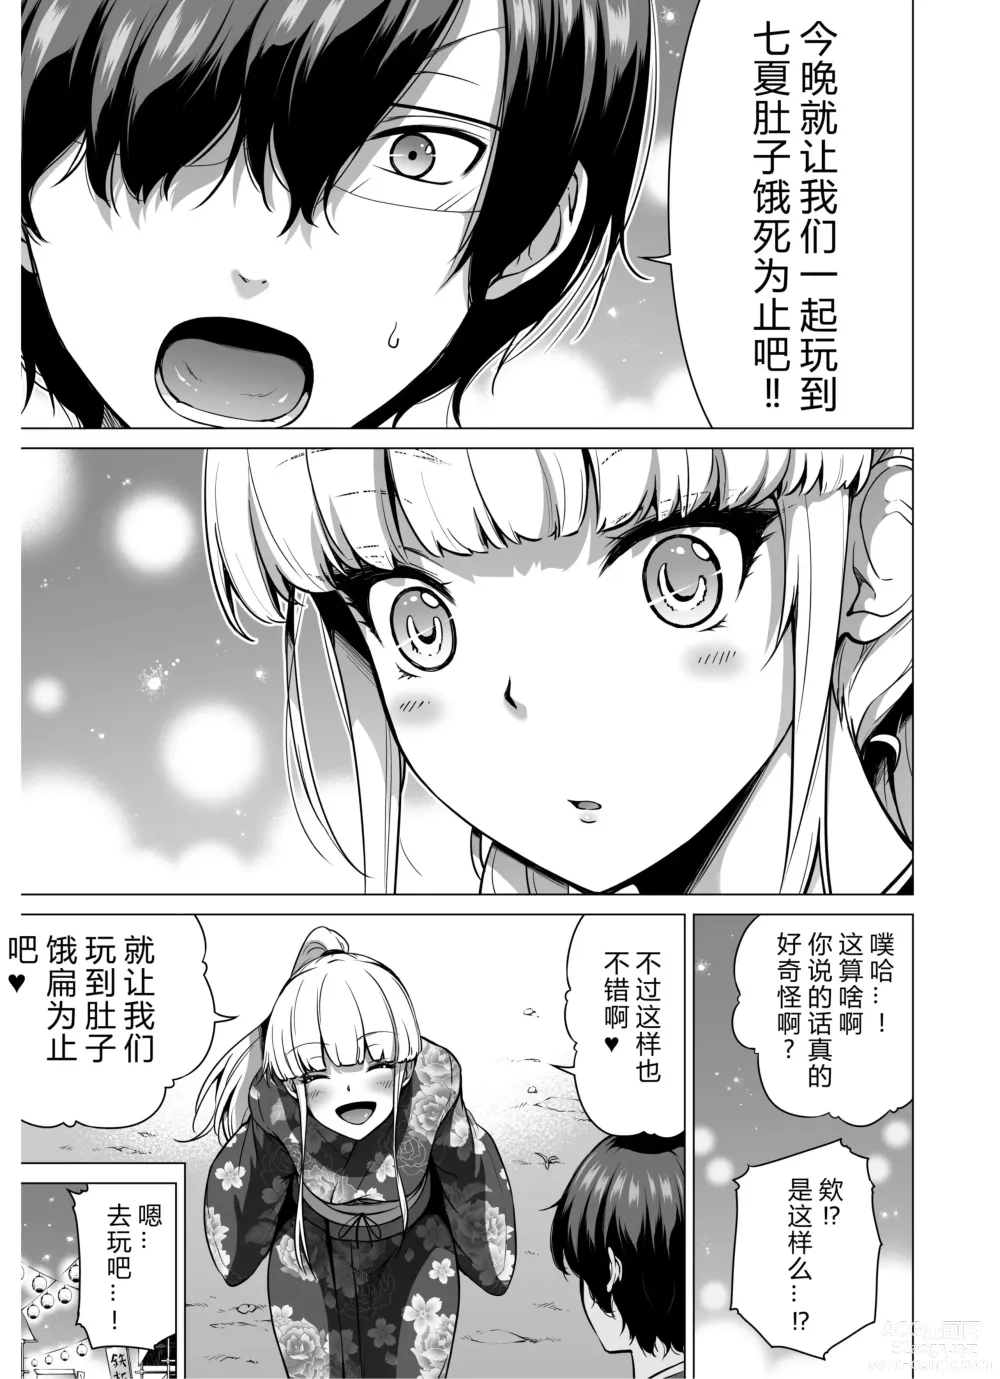 Page 6 of manga nanaka no rakuen7